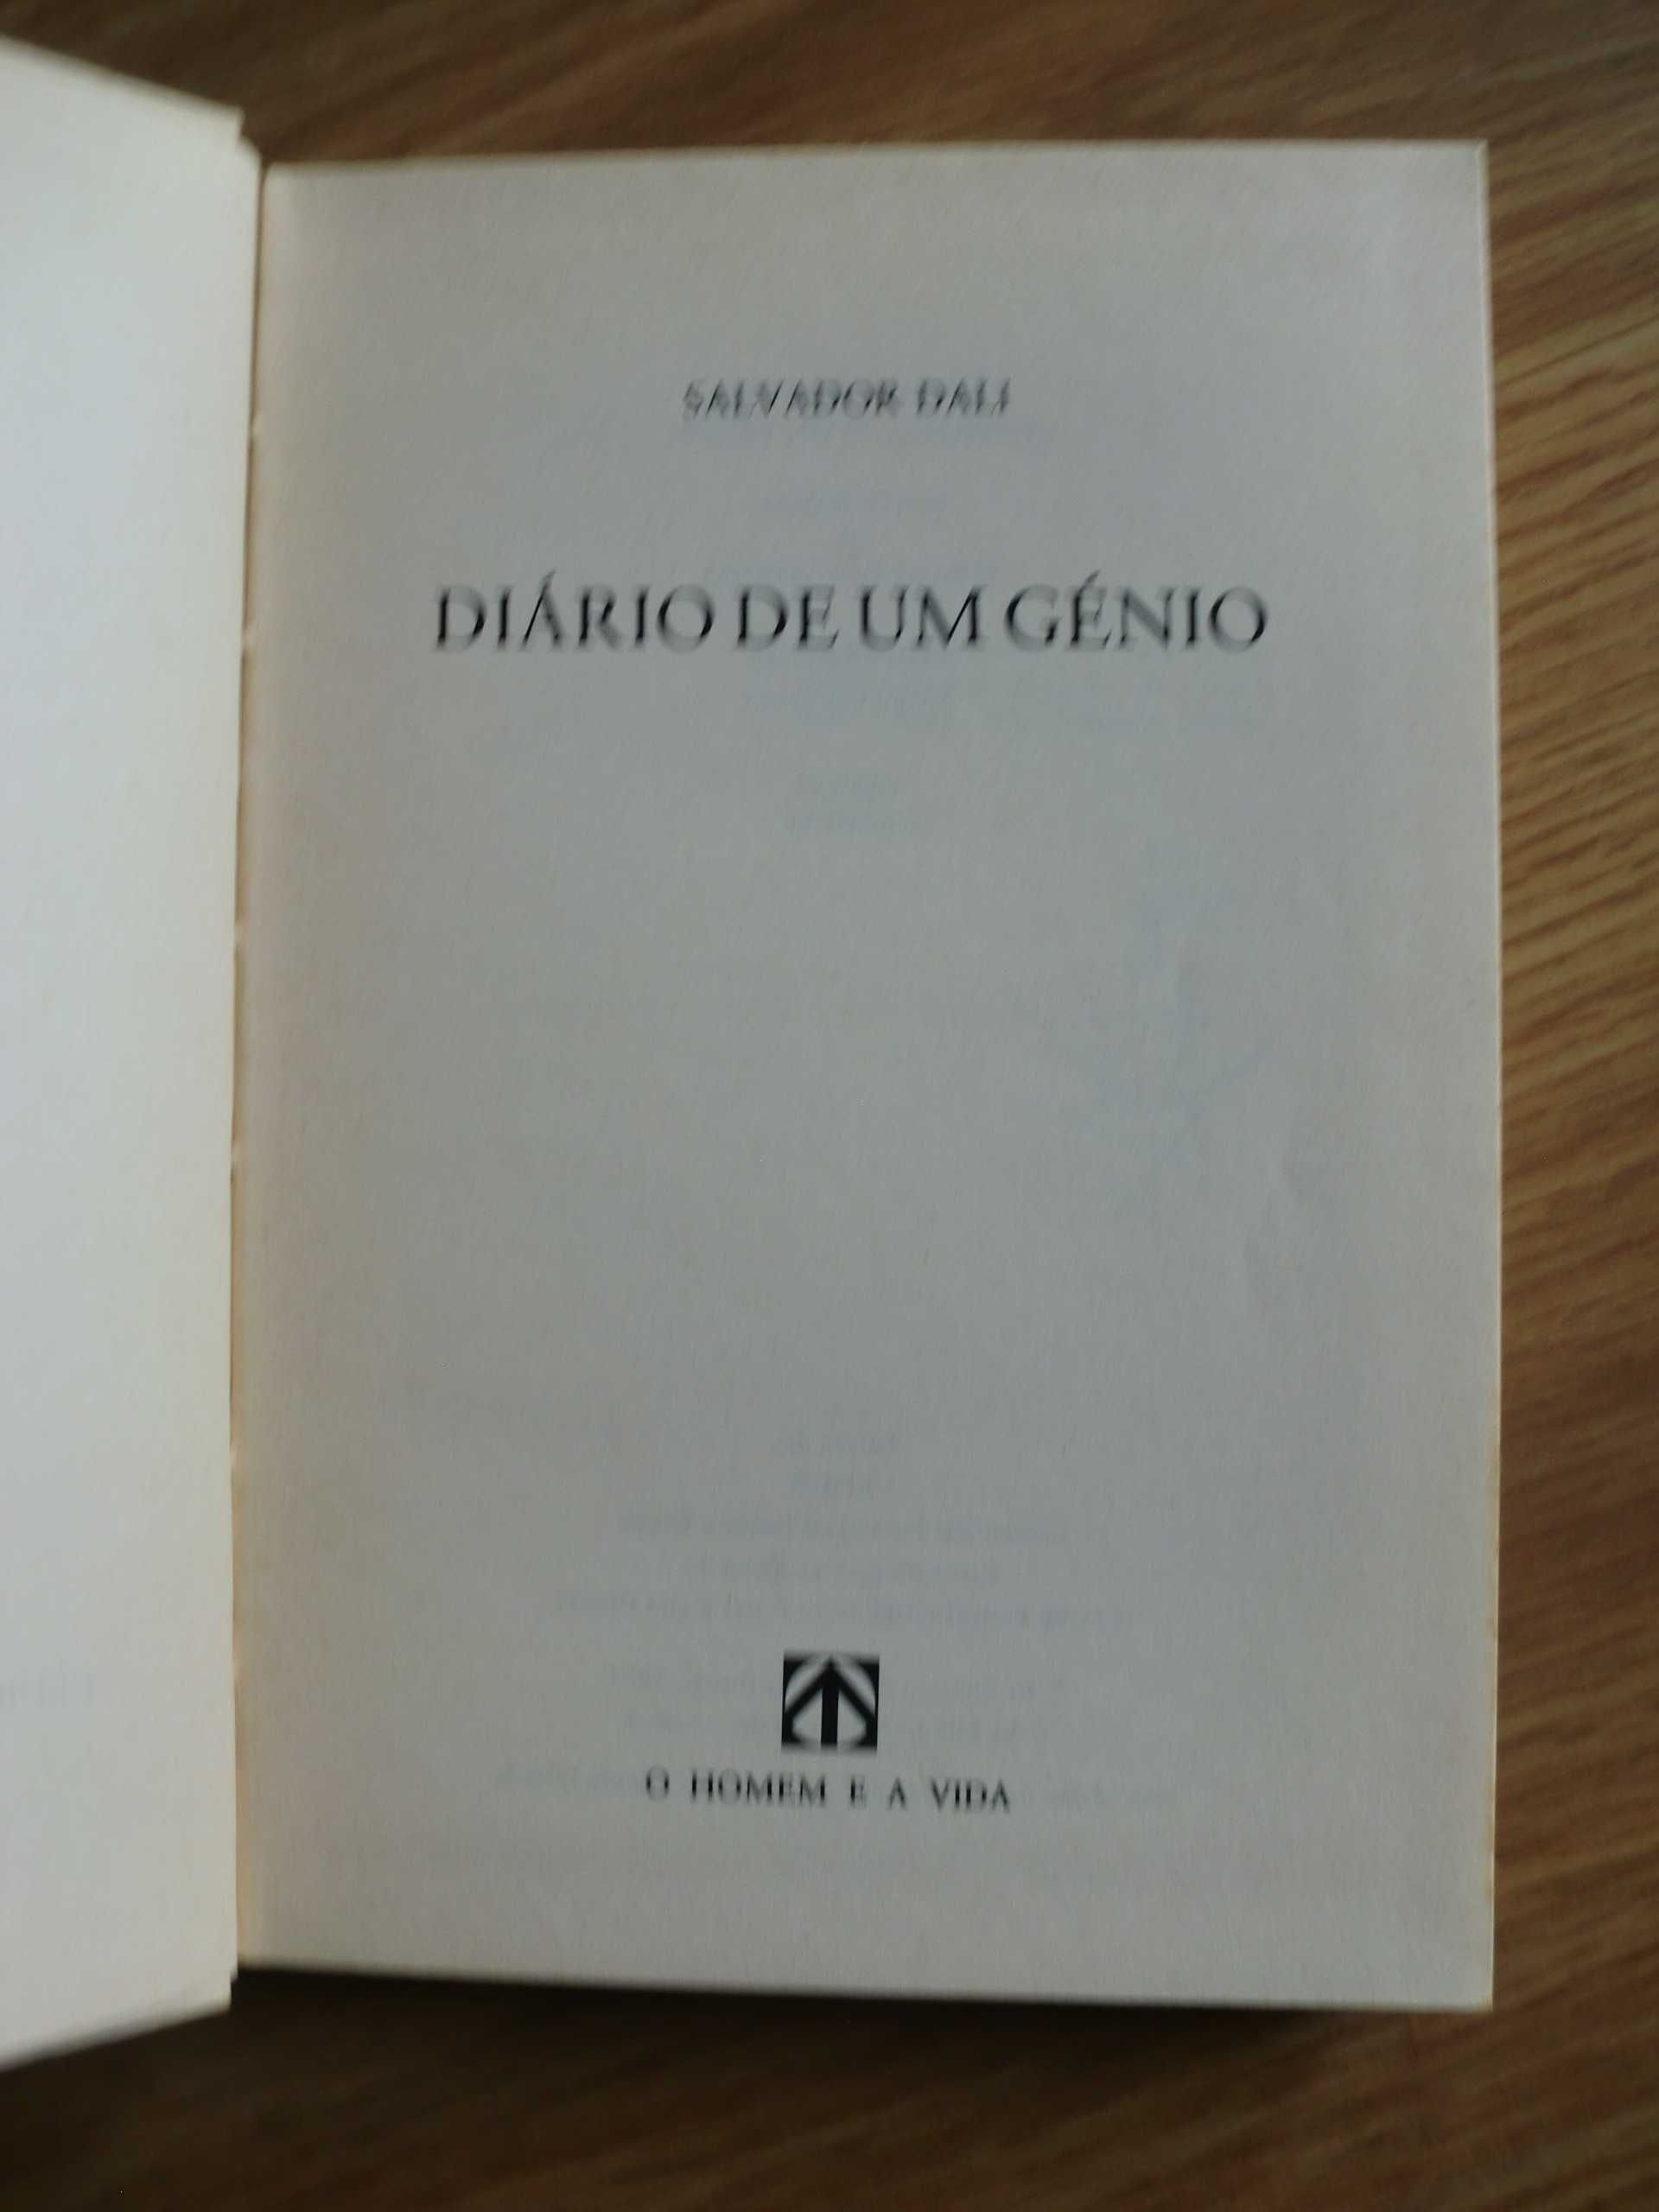 Diário de um Génio
de Salvador Dali